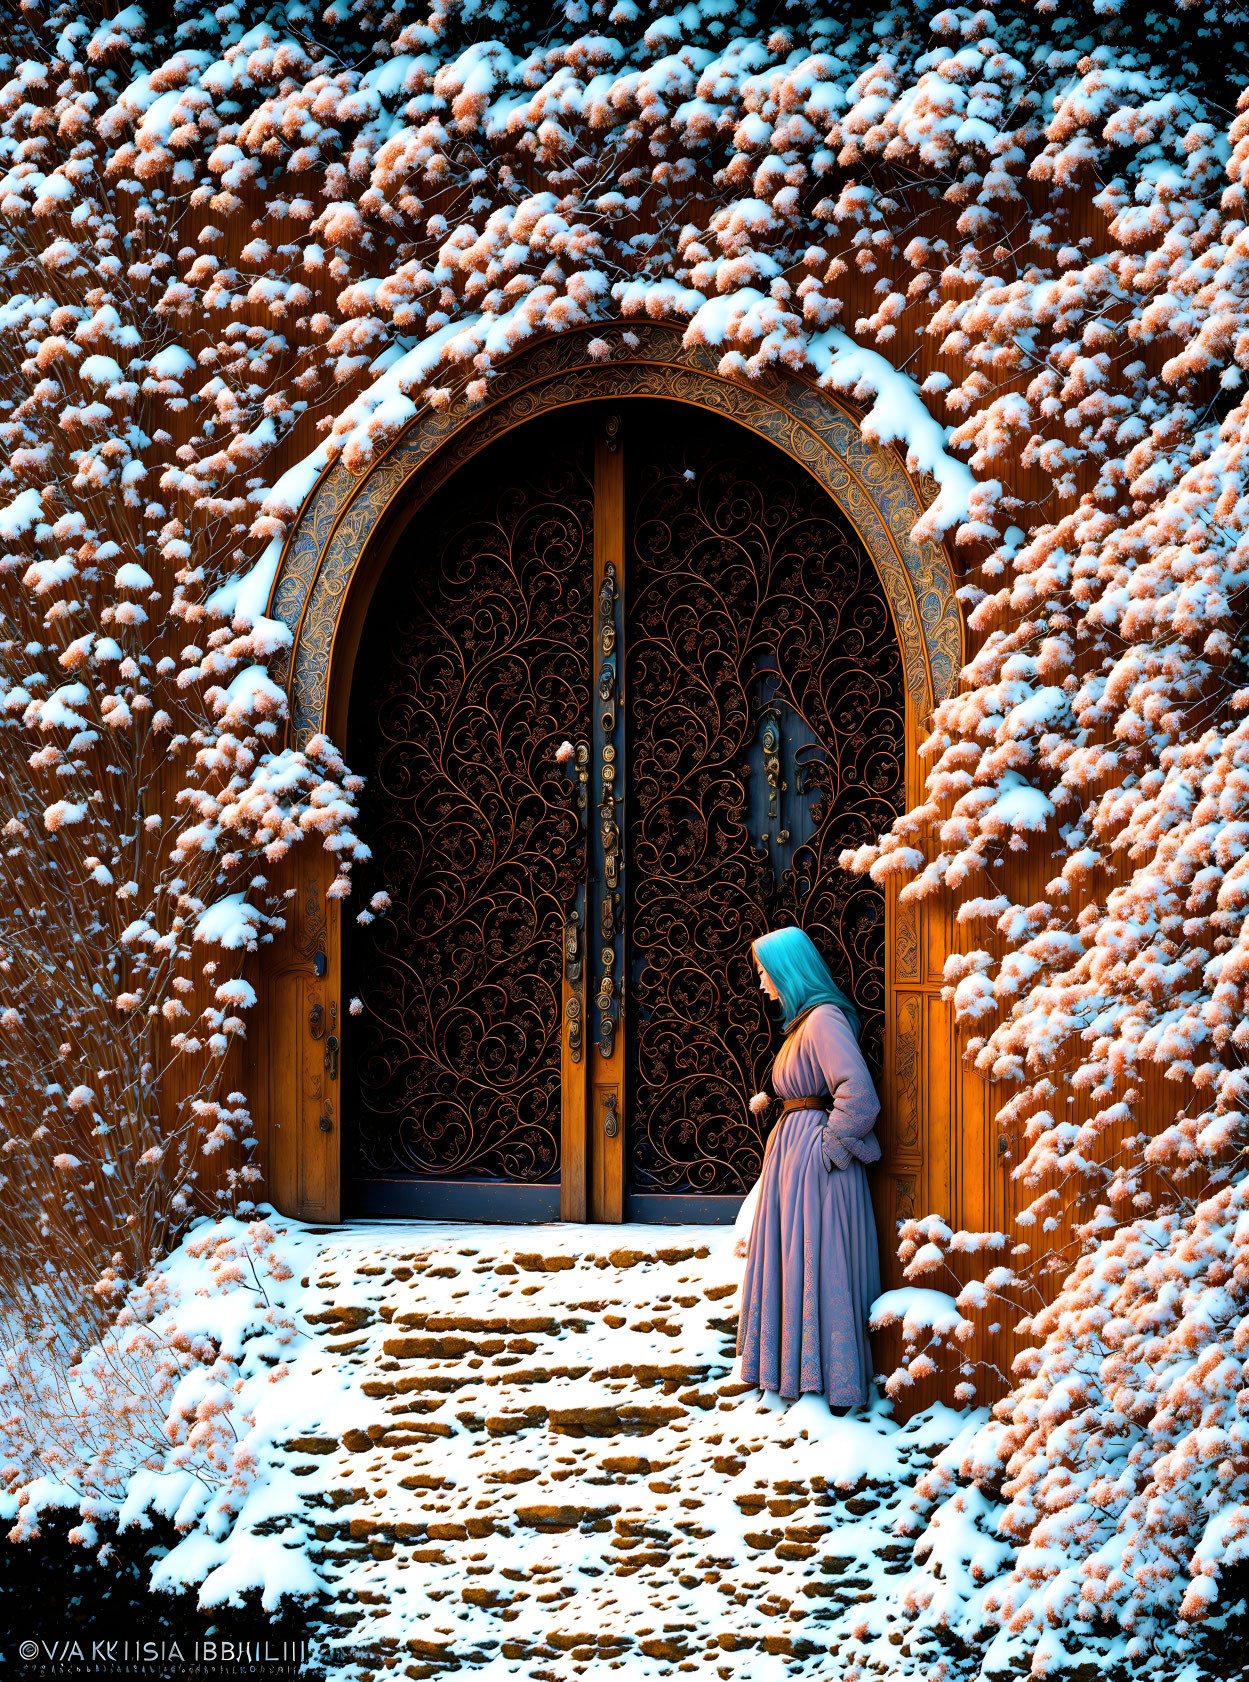 Magic door  in winter times.